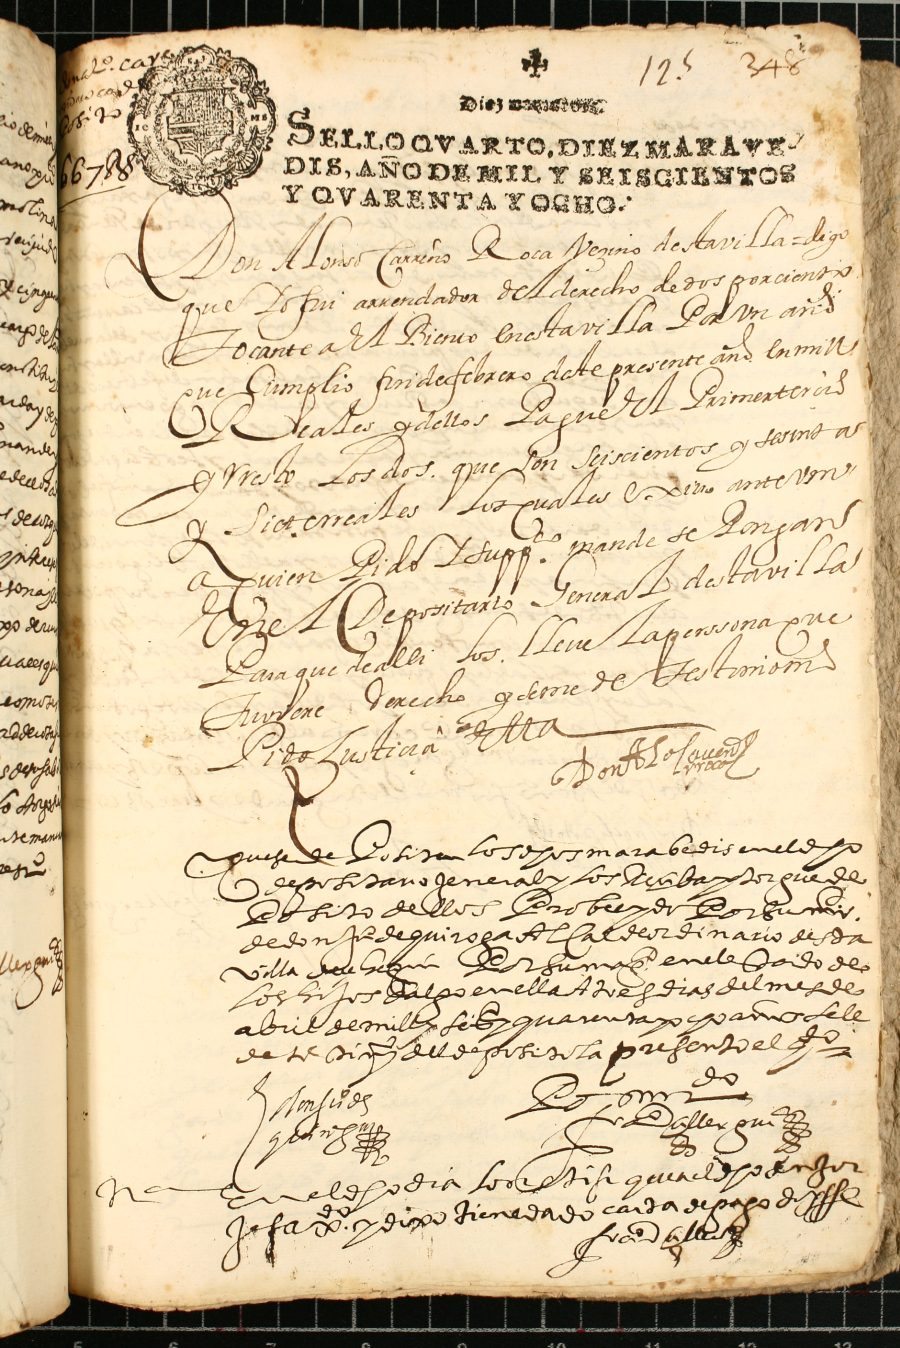 Depósito realizado por Alonso Carreño Roca, vecino de Cehegín y arrendador del derecho del 2% del viento durante un año que cumplió en febrero de 1648, al depositario general.